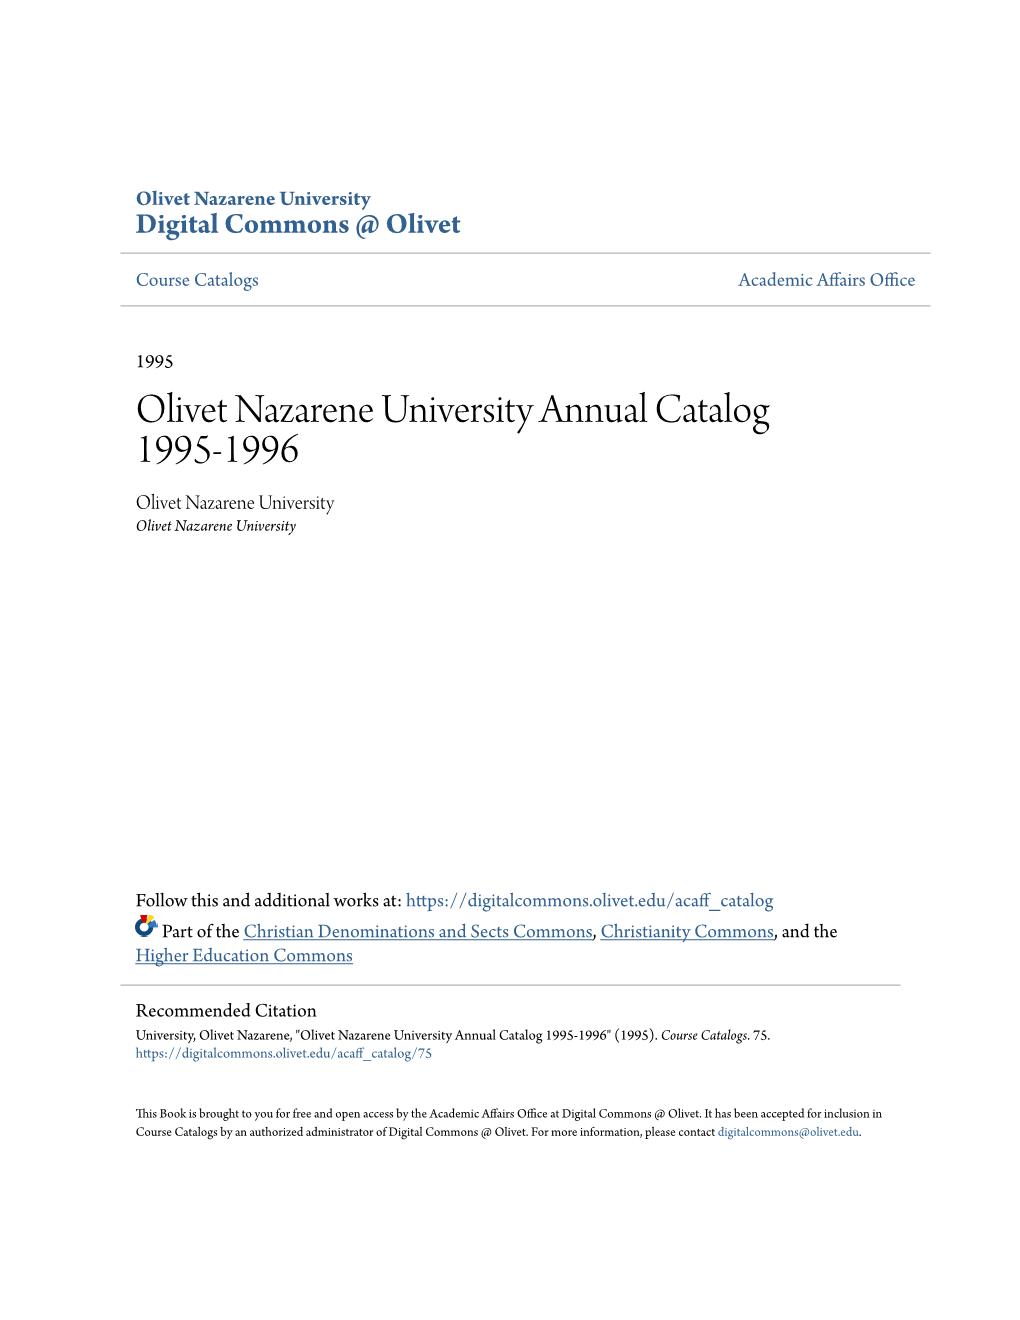 Olivet Nazarene University Annual Catalog 1995-1996 Olivet Nazarene University Olivet Nazarene University